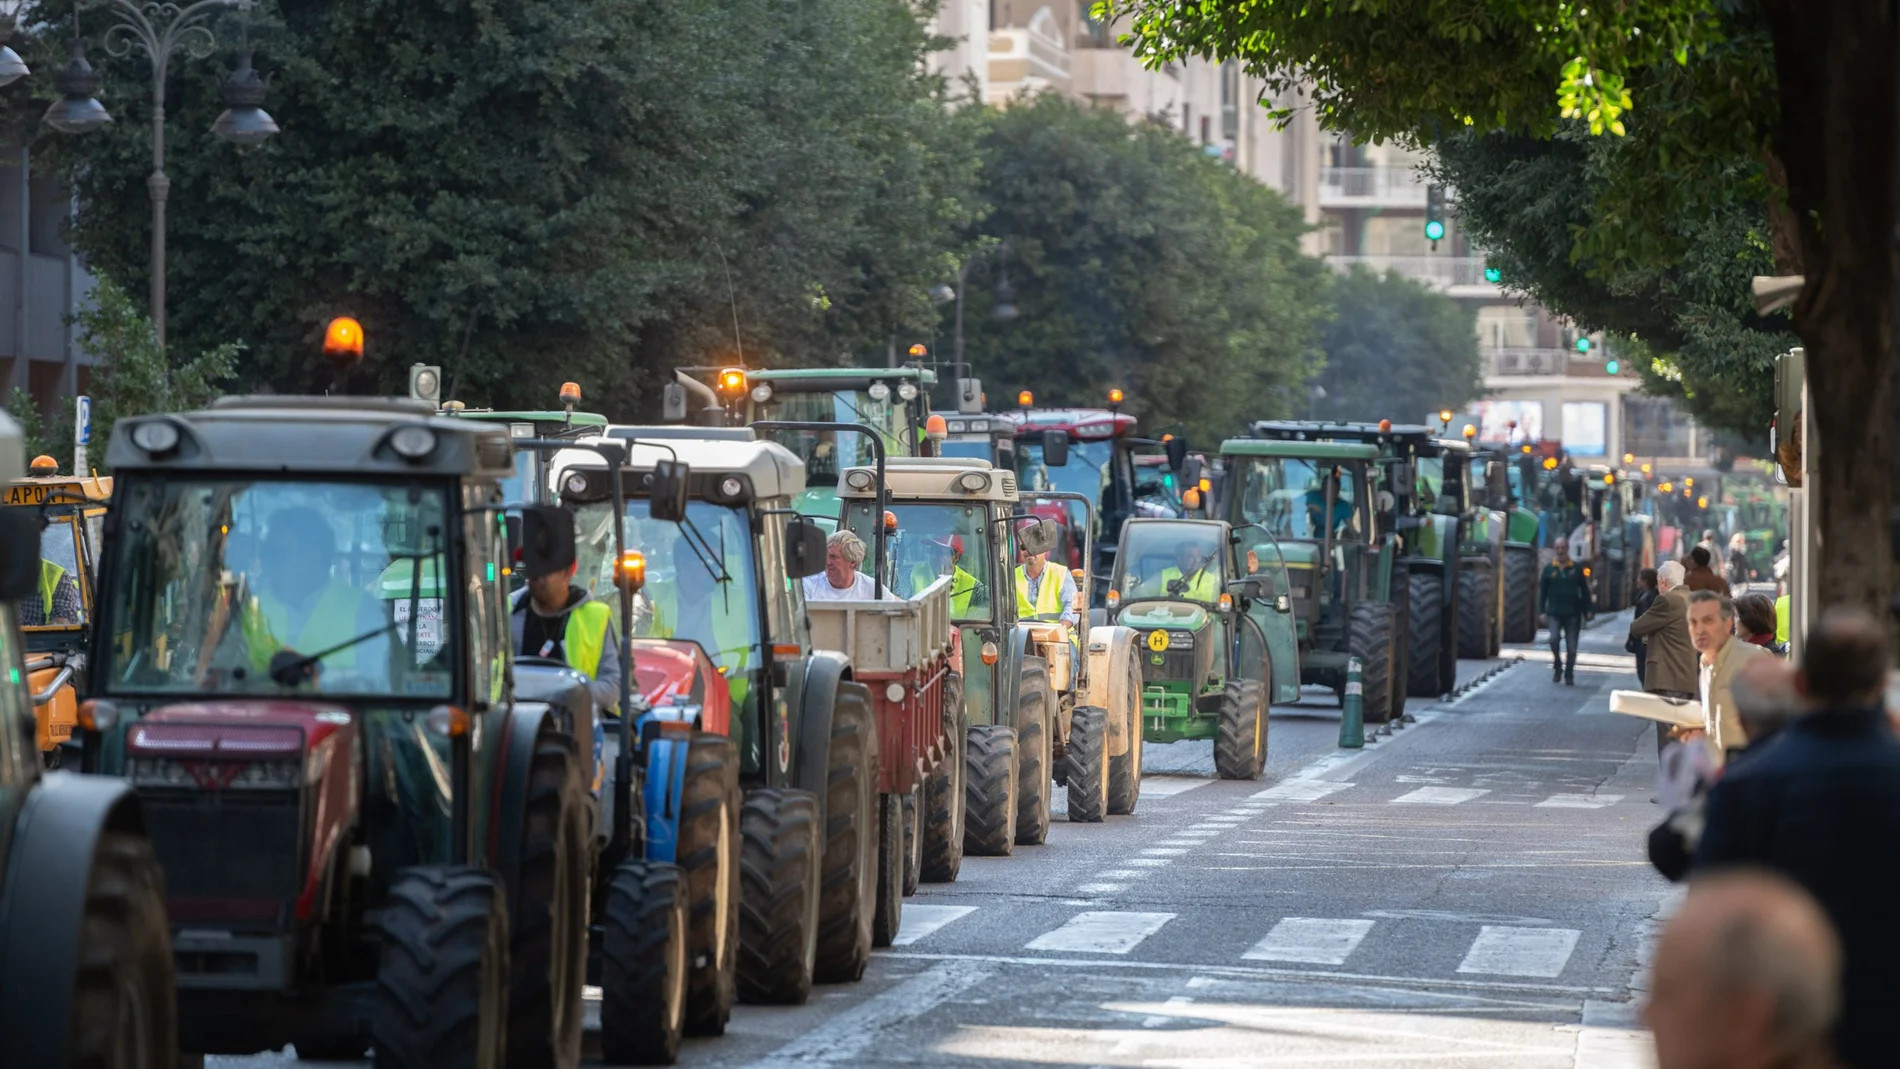 Imagen de la protesta de los agricultores con los tractores en la ciudad de Valencia